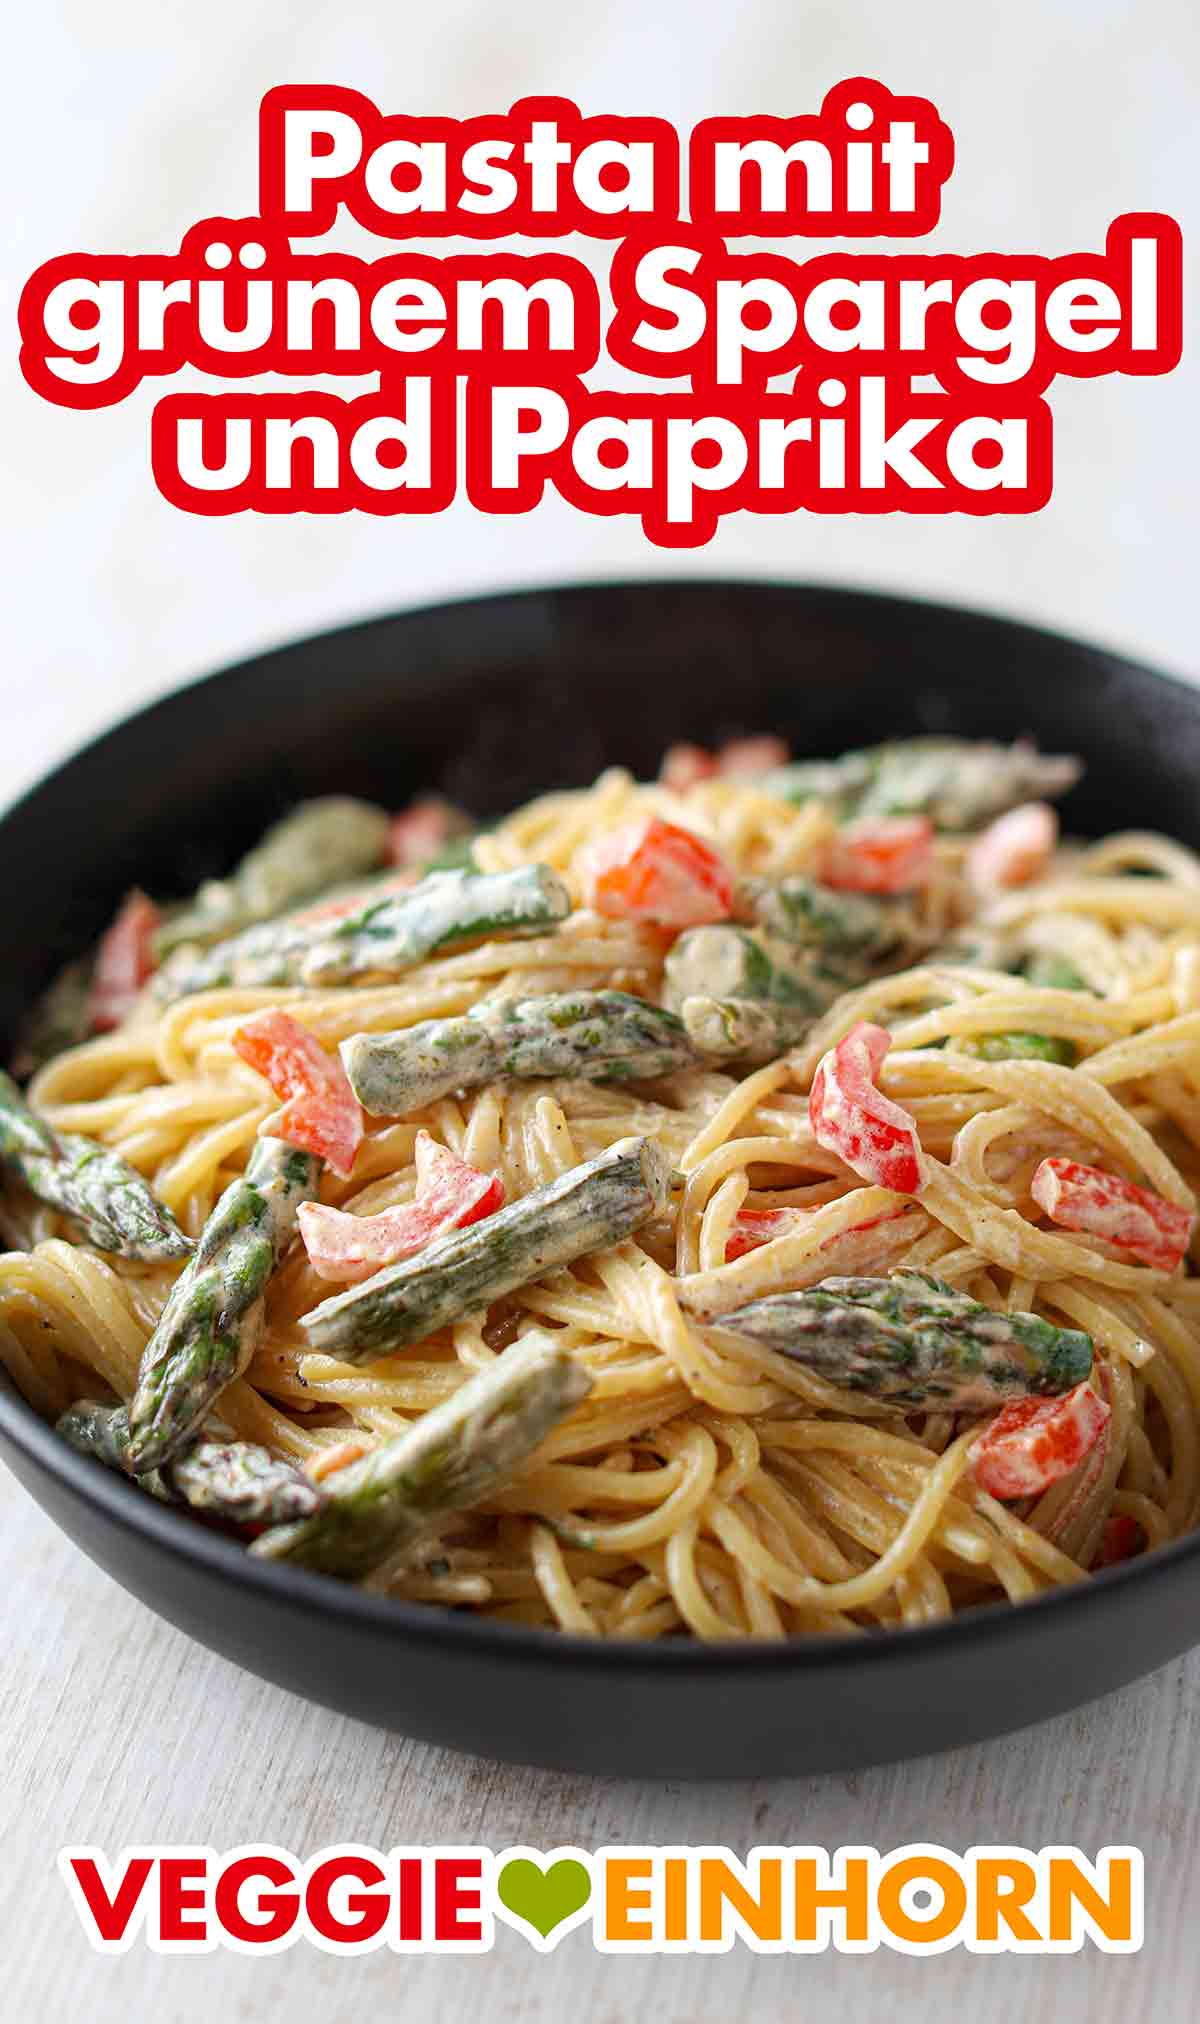 Pasta mit gebratenem grünem Spargel und Paprika